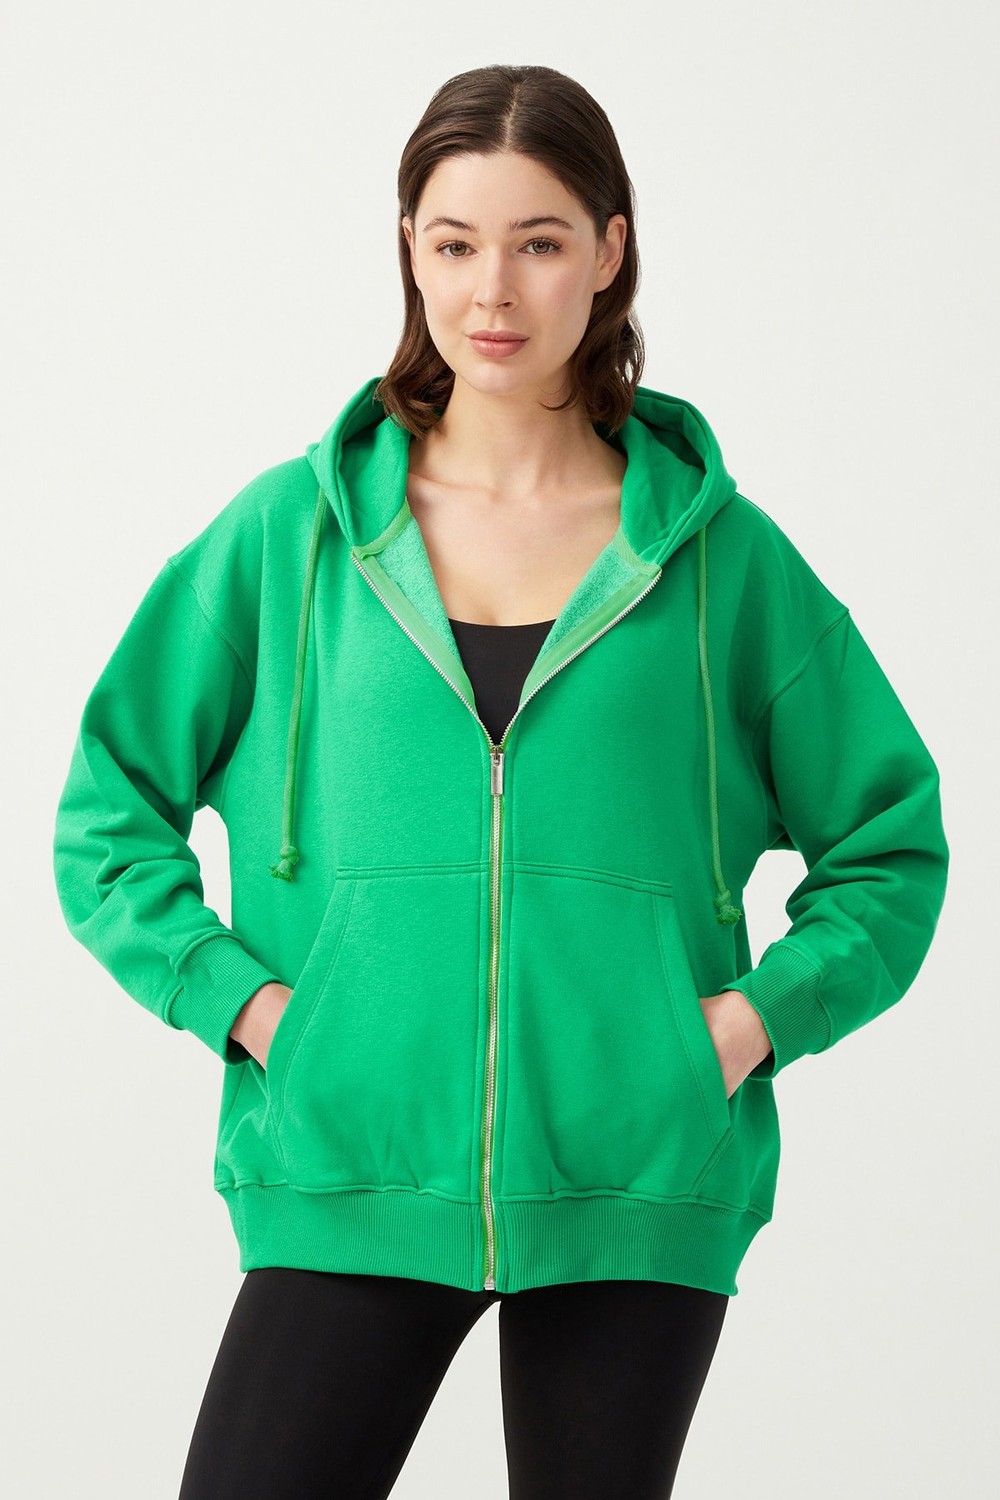 LOS OJOS Women's Green Hooded Oversize Rayon Zipper Knitted Sweatshirt.